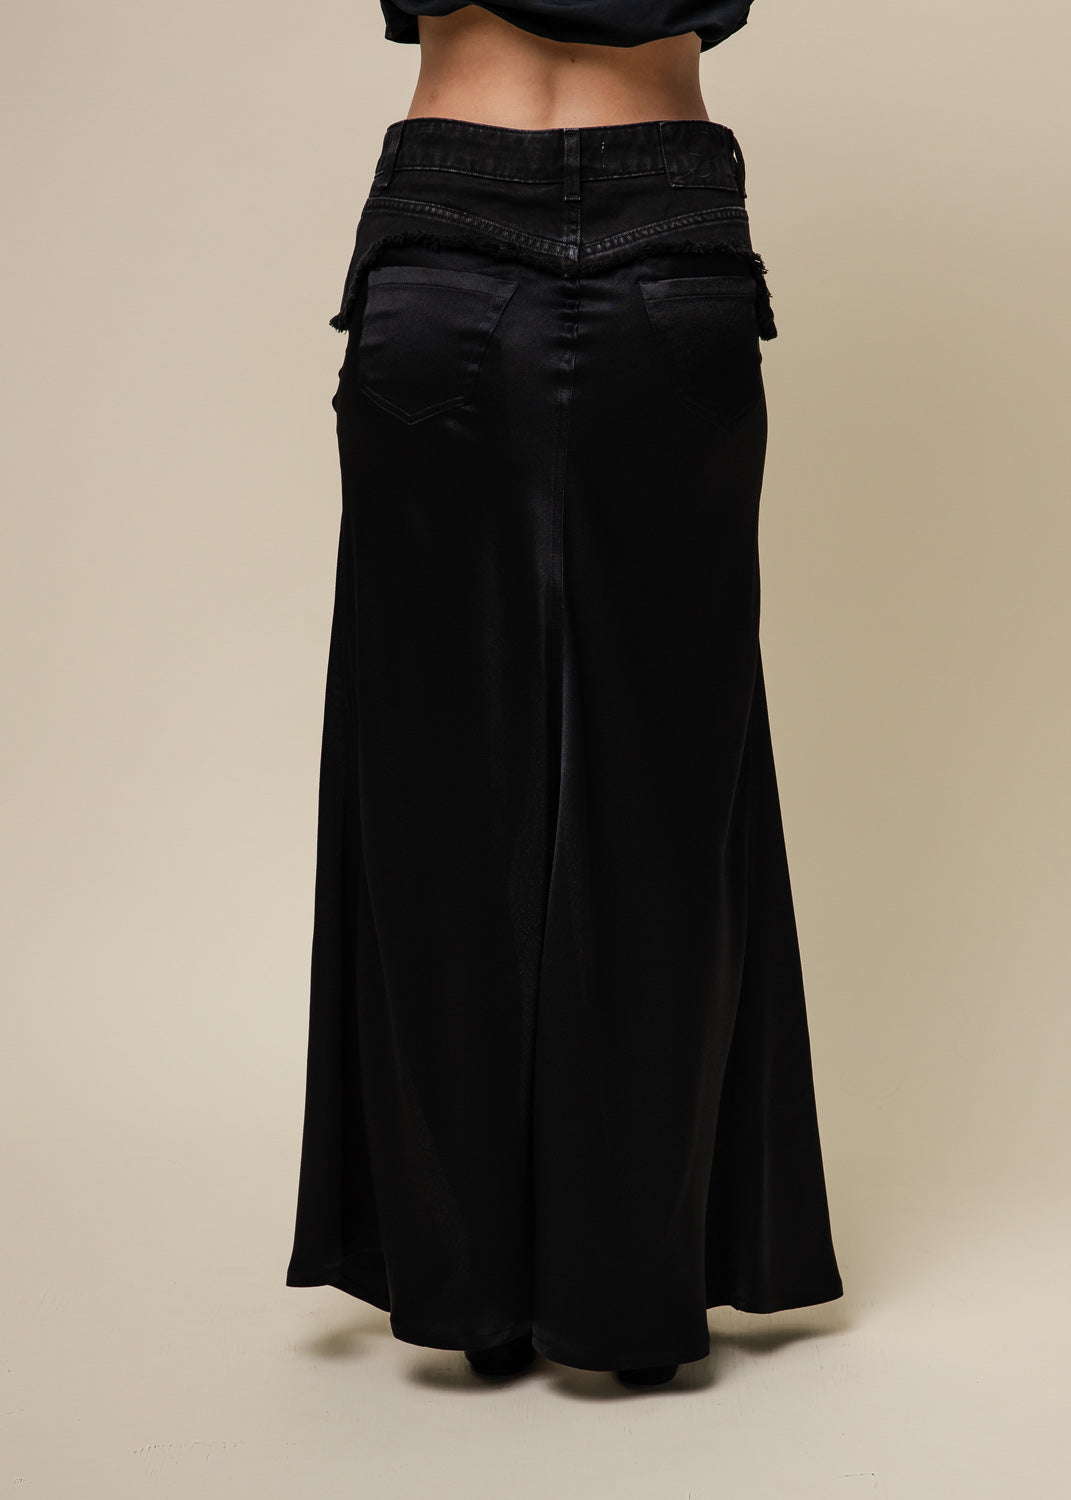 Satin Skirt- Black